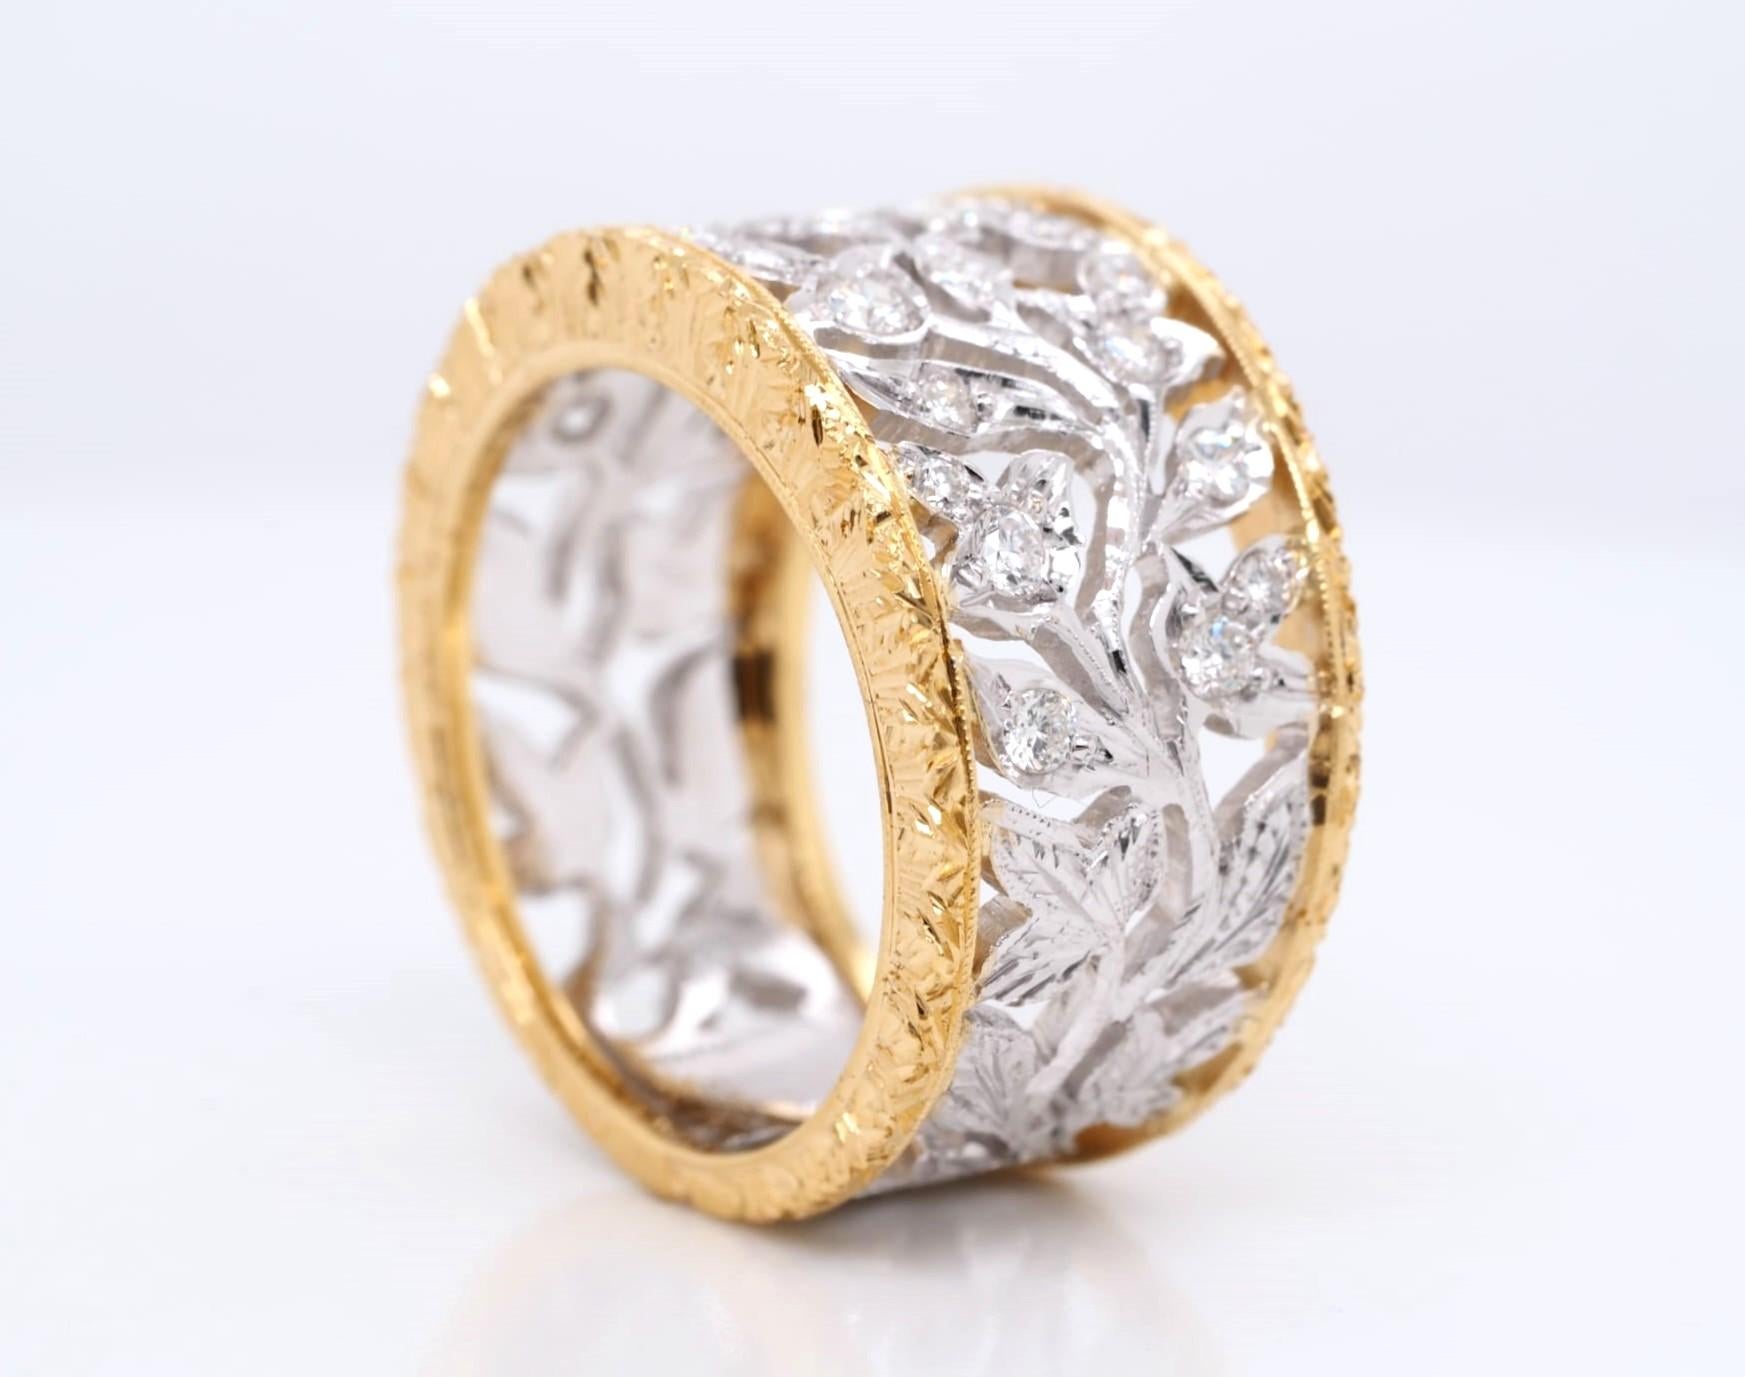 Dieser wunderschöne Ring aus 18 Karat Gelb- und Weißgold ist mit 24 runden Diamanten mit einem Gesamtkaratgewicht von 0,60 Karat besetzt. Die Diamanten sind in einer Zackenfassung gefasst und werden als sehr leicht eingeschlossen (VS1) in Reinheit